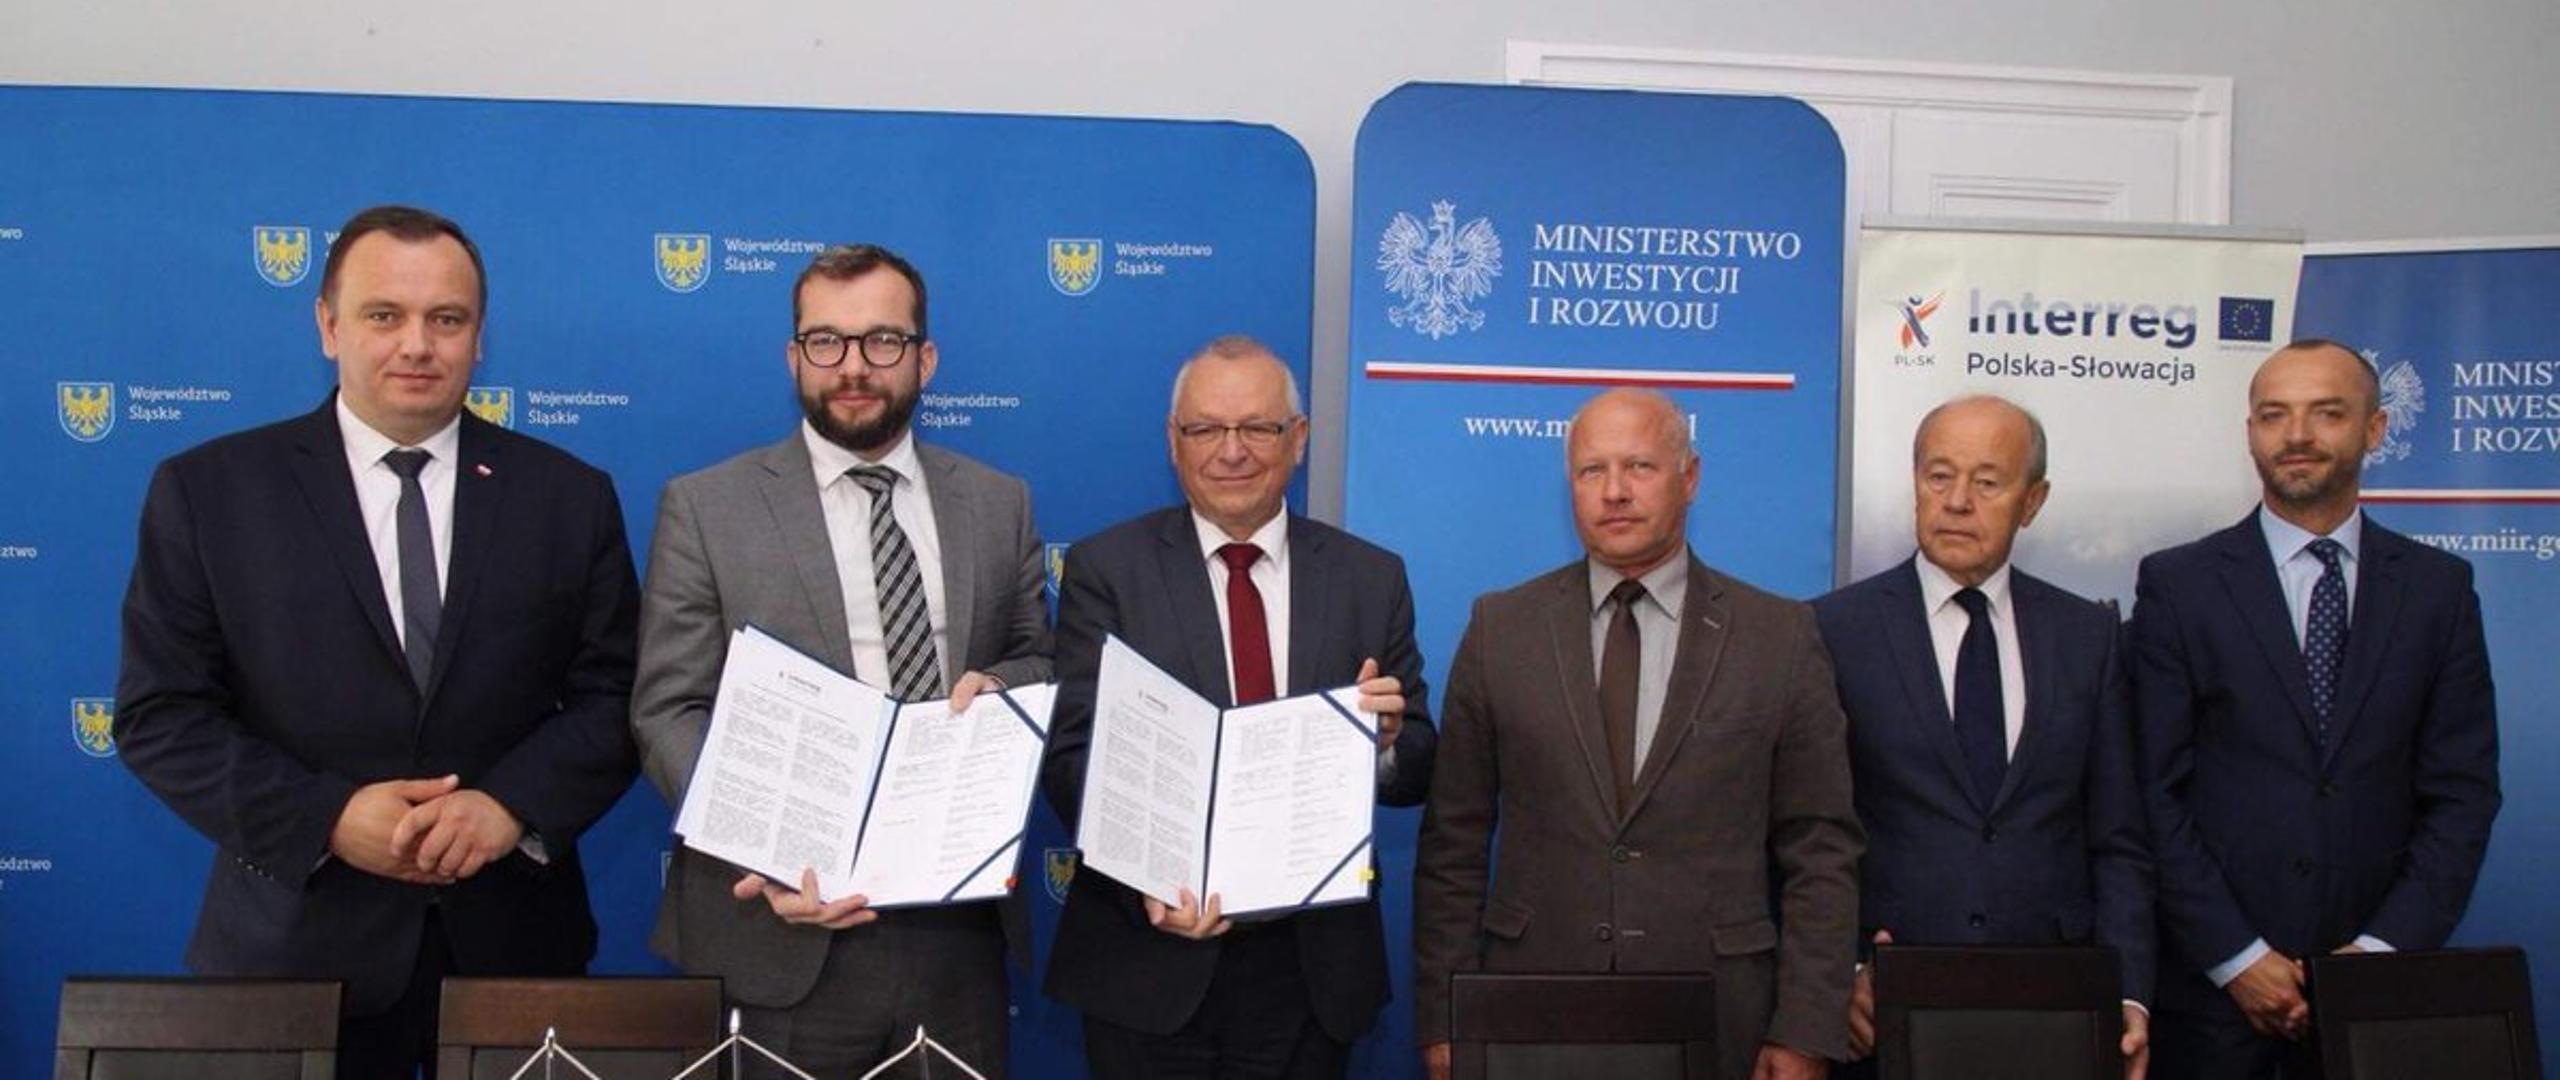 Minister Grzegorz Puda stoi i trzyma w ręku podpisaną umowę. Obok niego stoi pięciu pozostałych uczestników spotkania. 